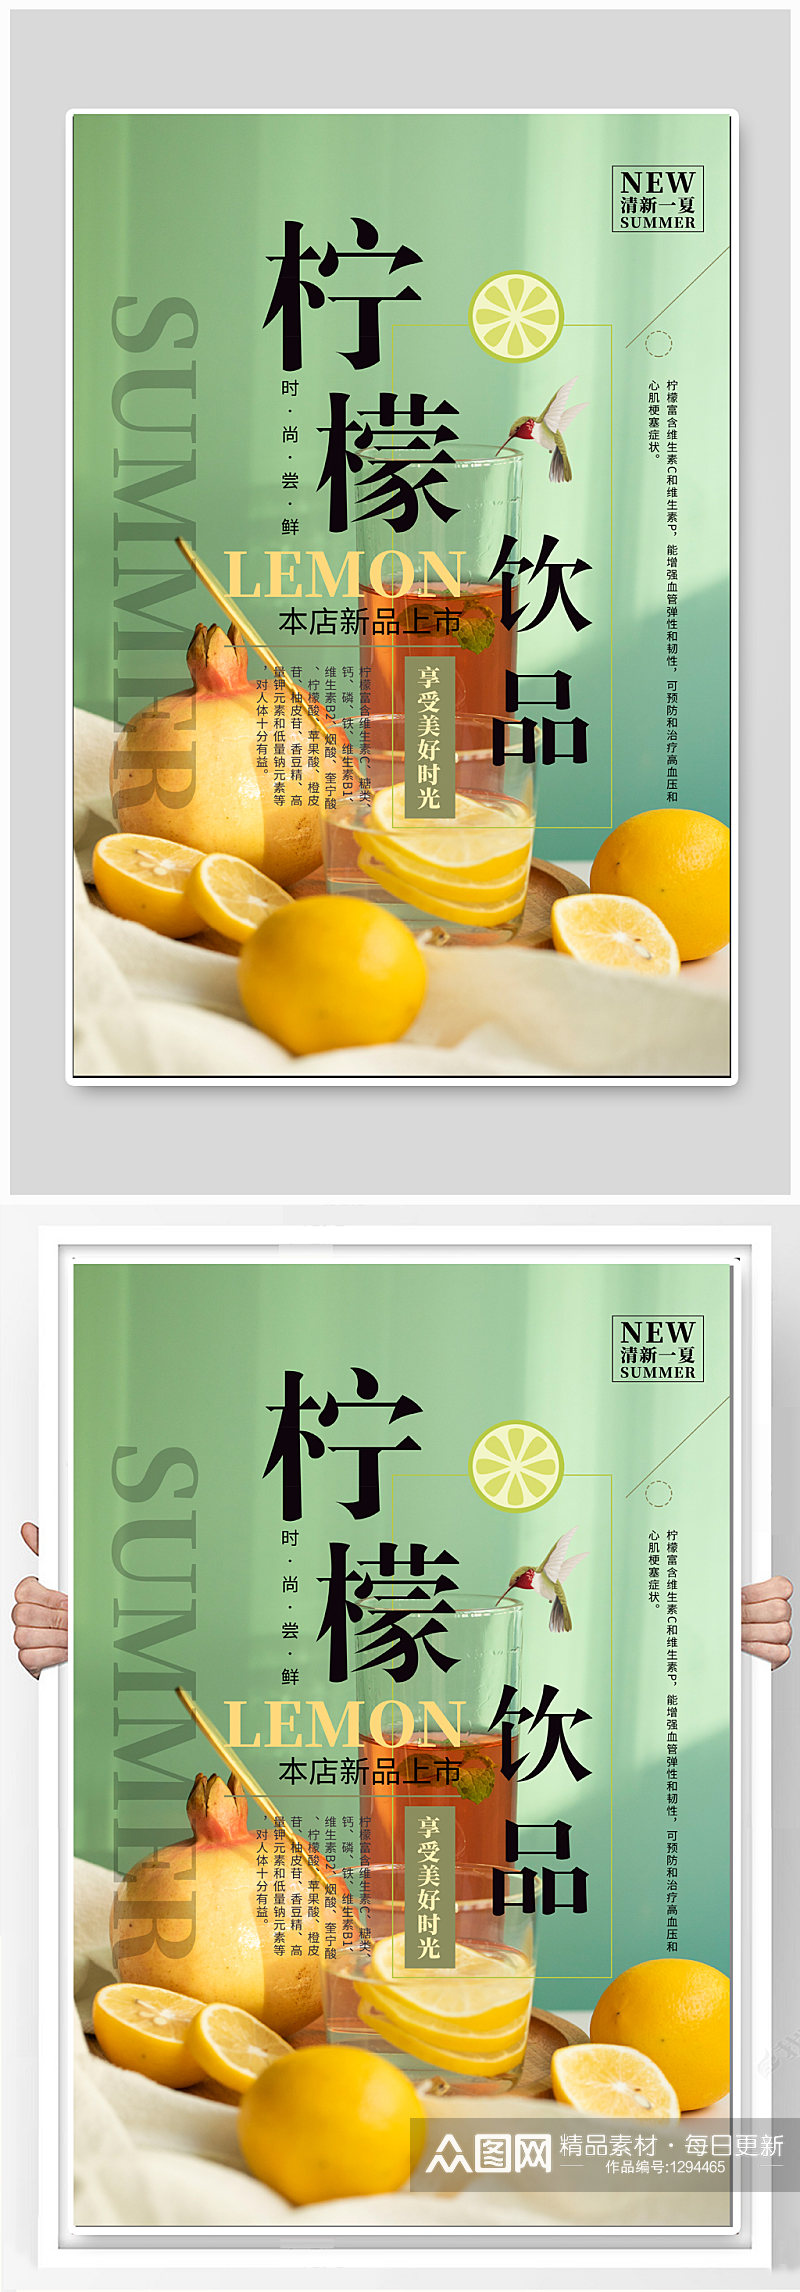 柠檬饮品上新促销海报素材